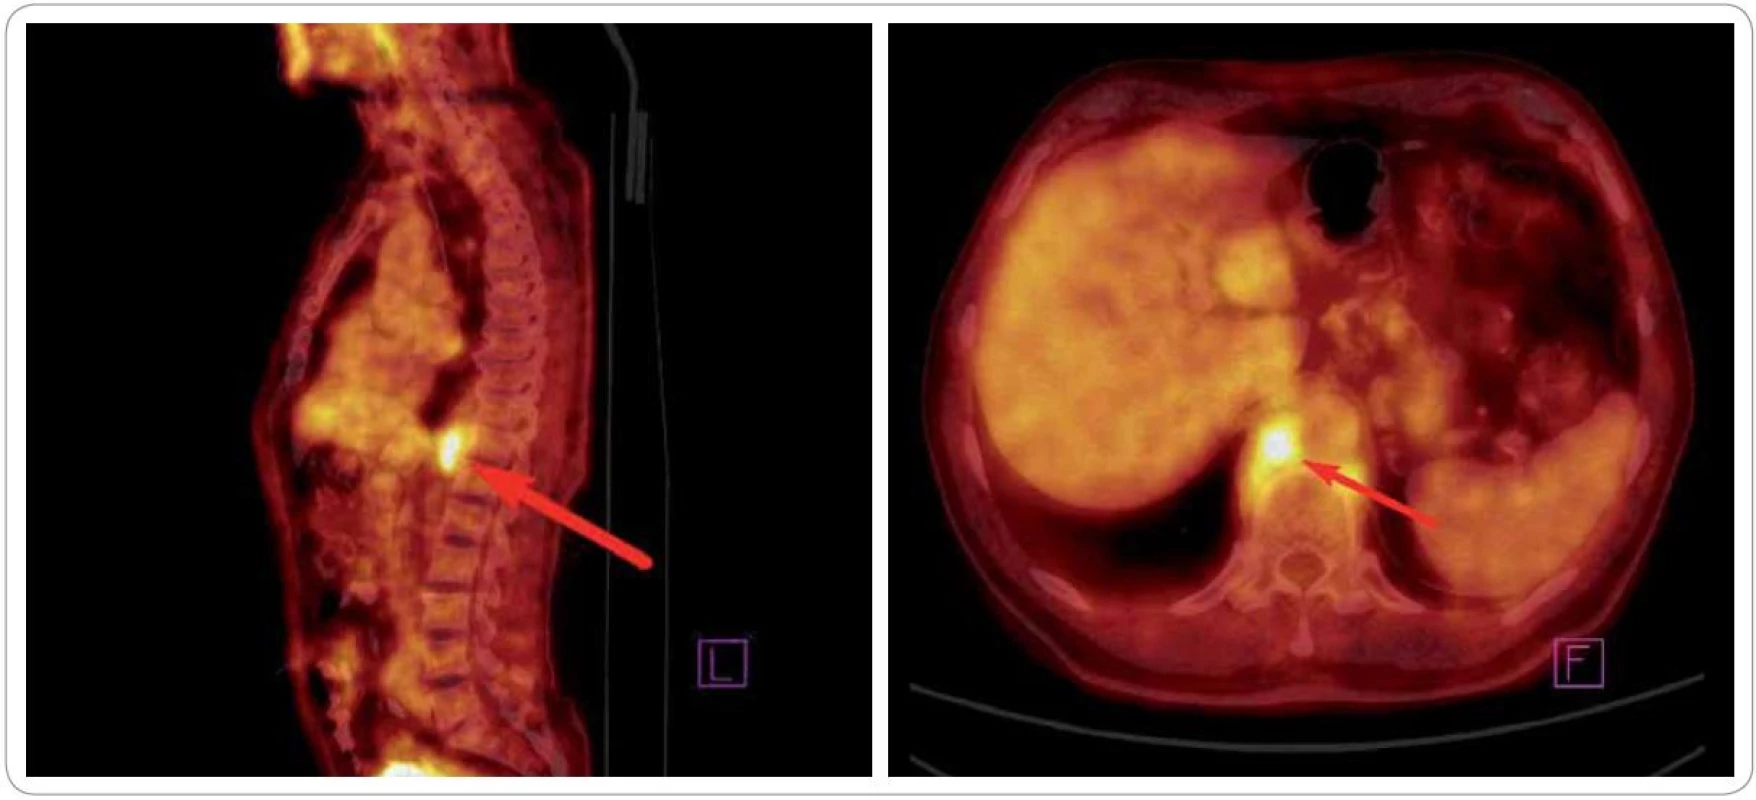 Obraz z celotělového PET/CT vyšetření před zahájením radioterapie (09/2010). Šipka ukazuje metabolicky aktivní infiltrát retrokrurálně.